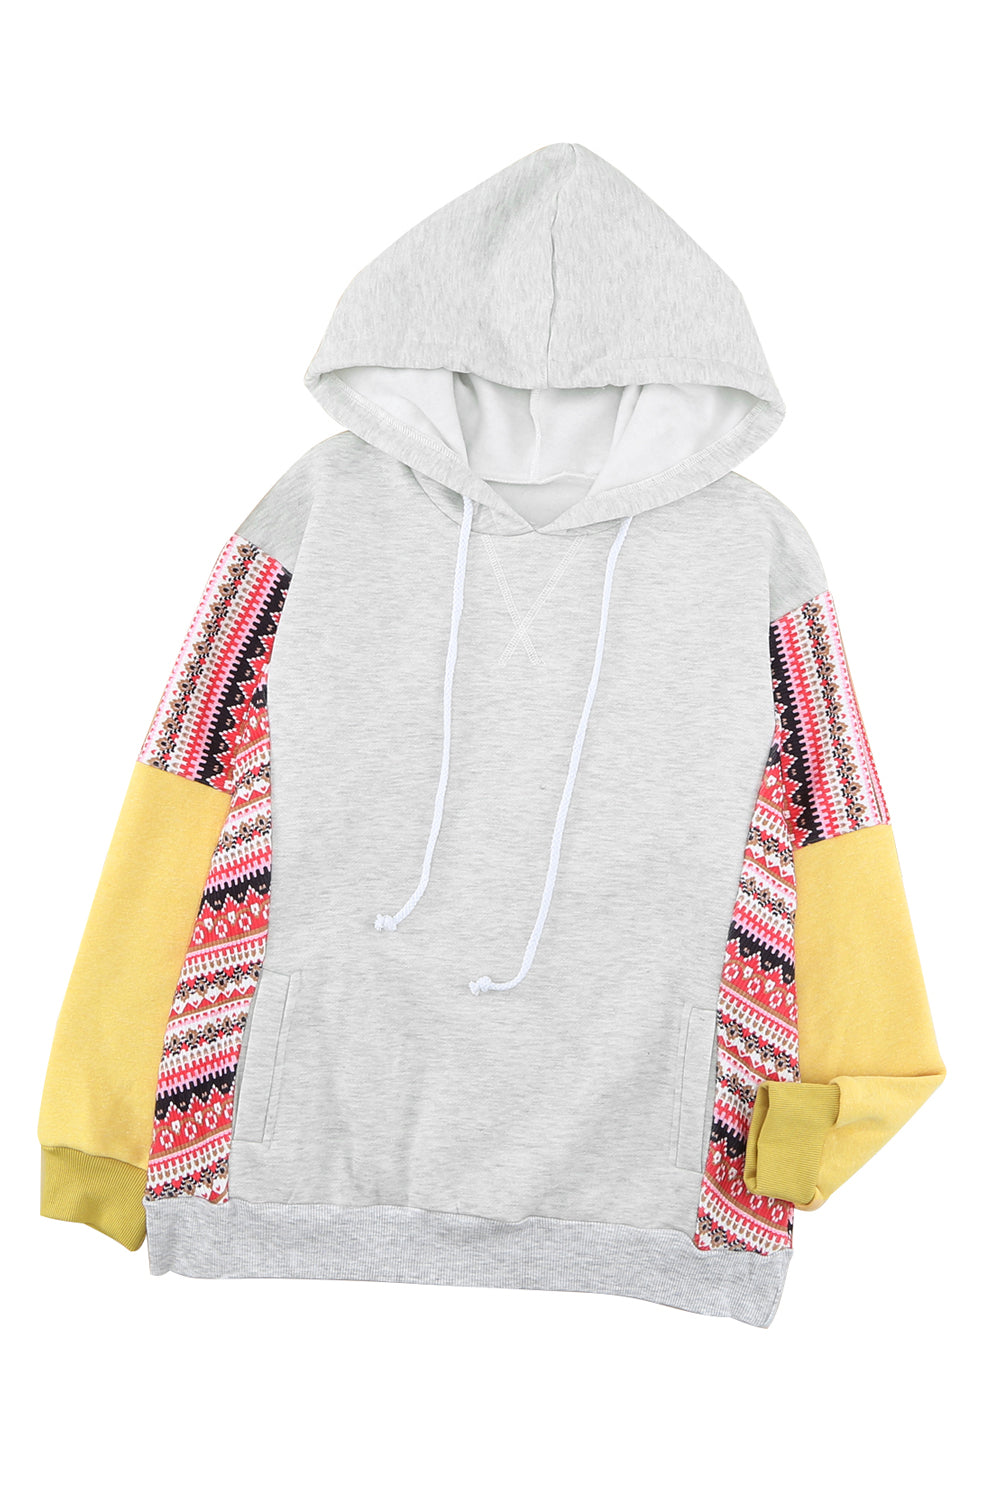 Aztec Patch Pullover Hoodie Sweatshirts & Hoodies JT's Designer Fashion